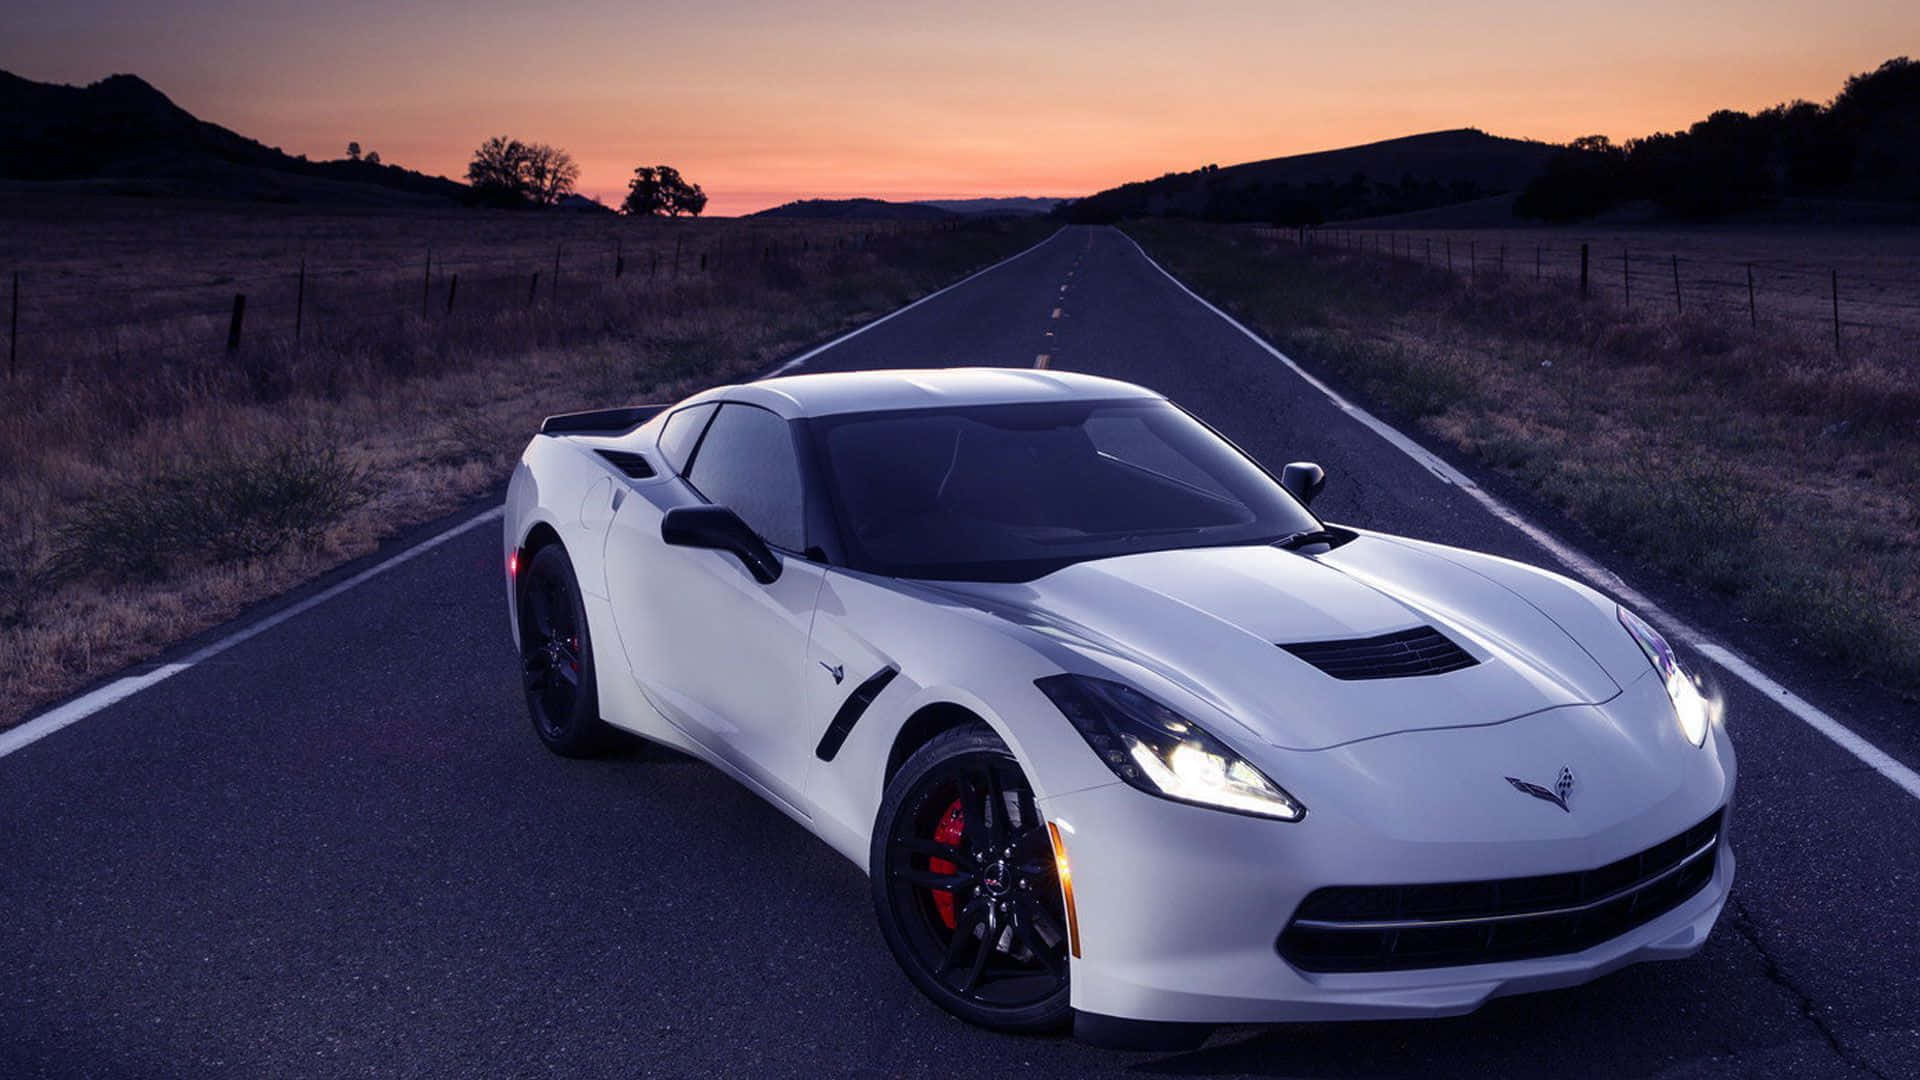 Geschwindigkeitund Kraft Kennzeichnen Den Amerikanischen Klassiker, Die Corvette.